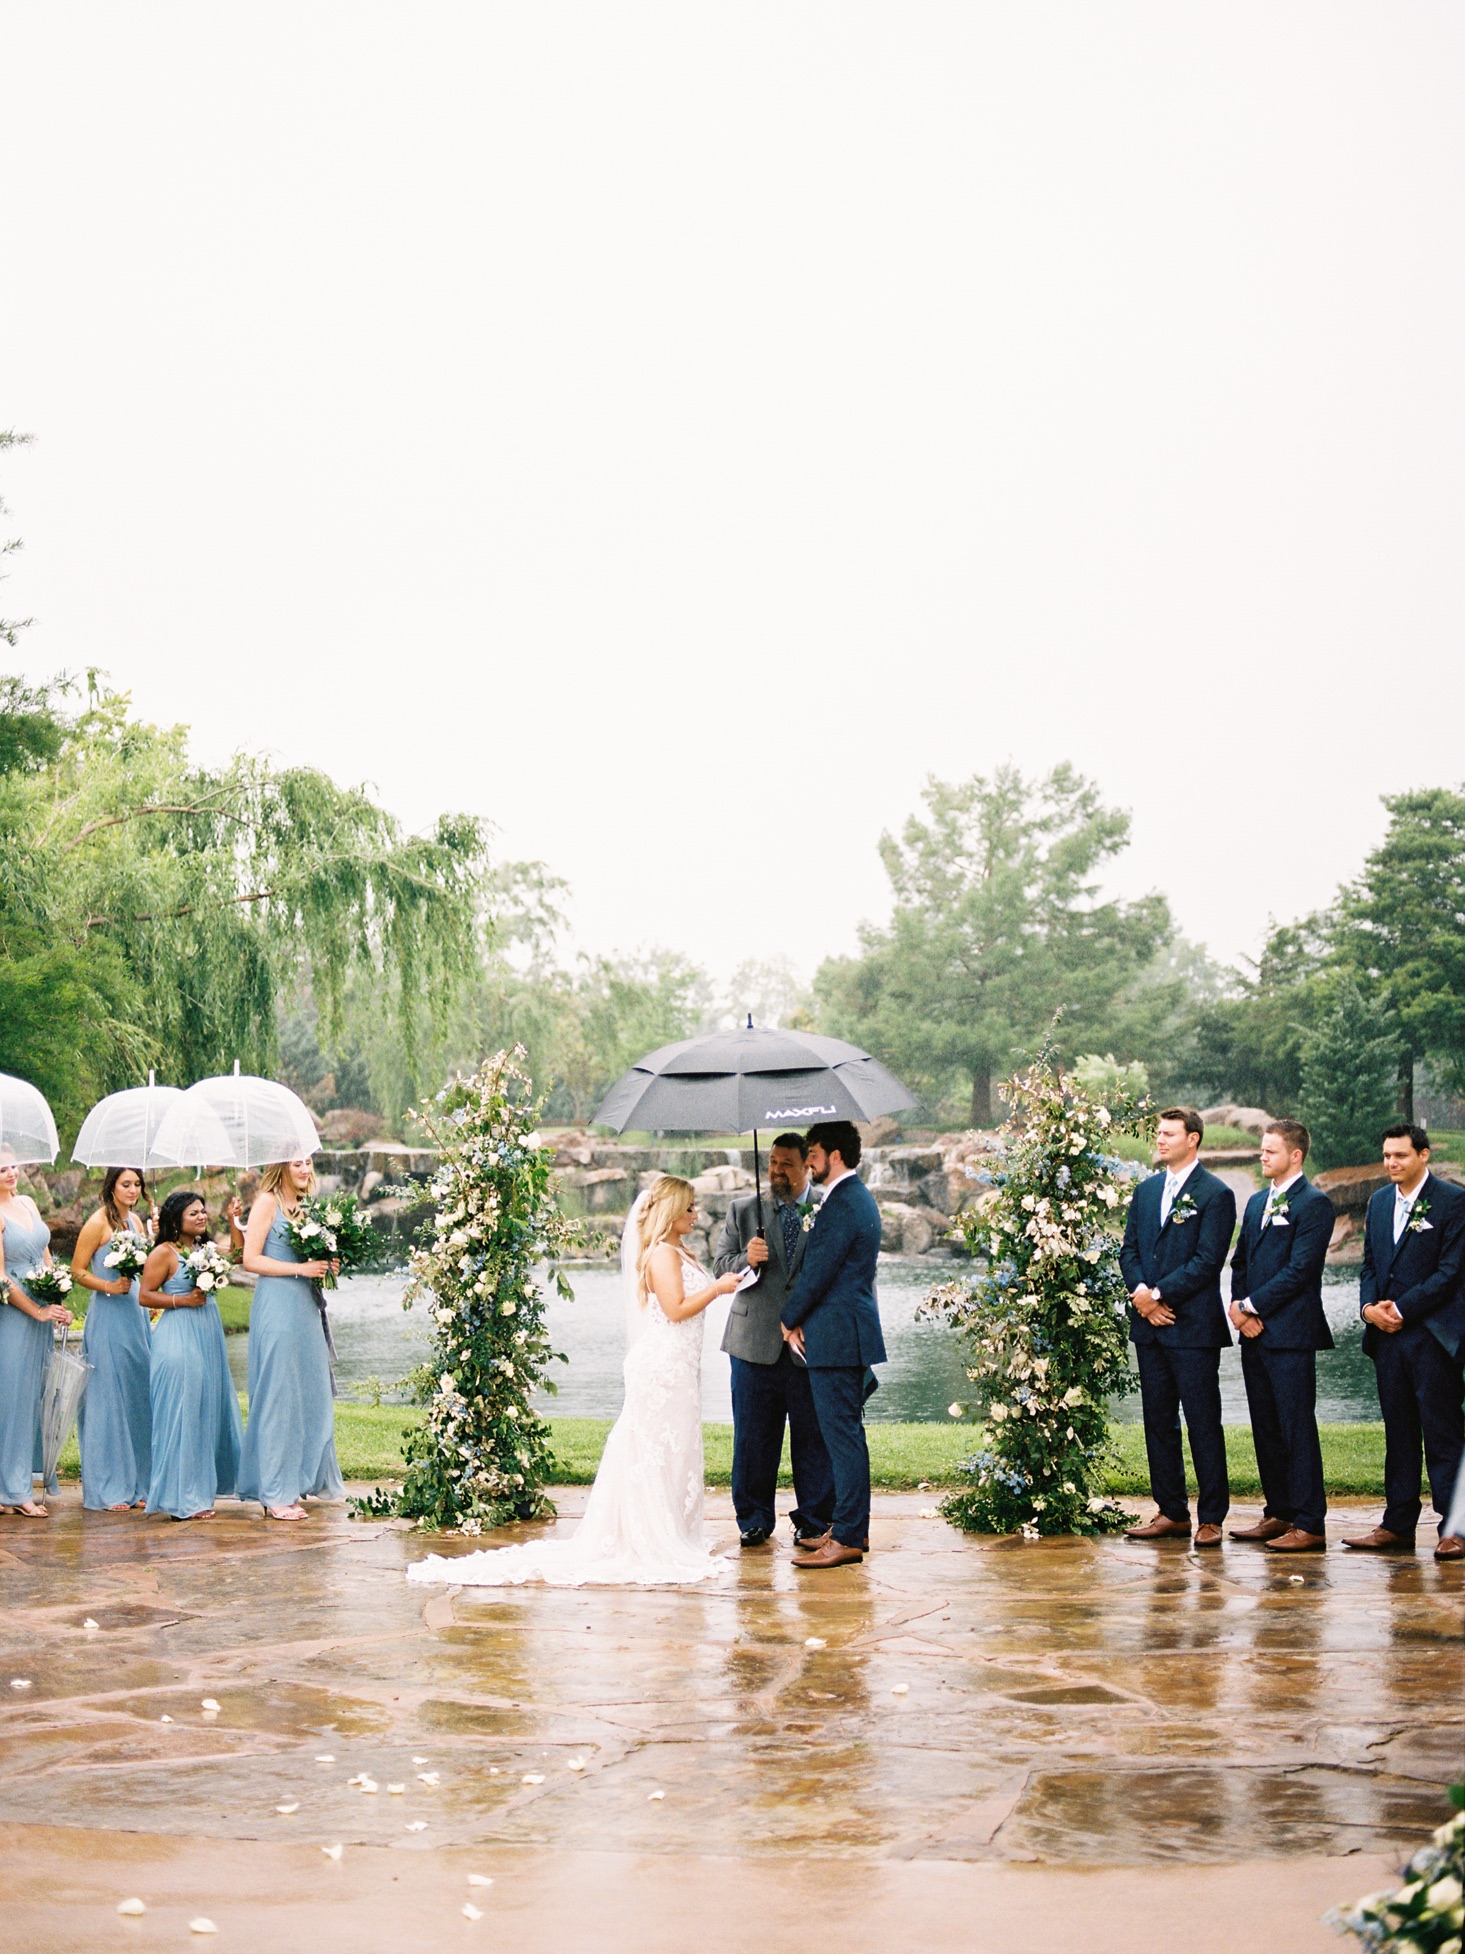 Rainy Spring Wedding at Coles Garden